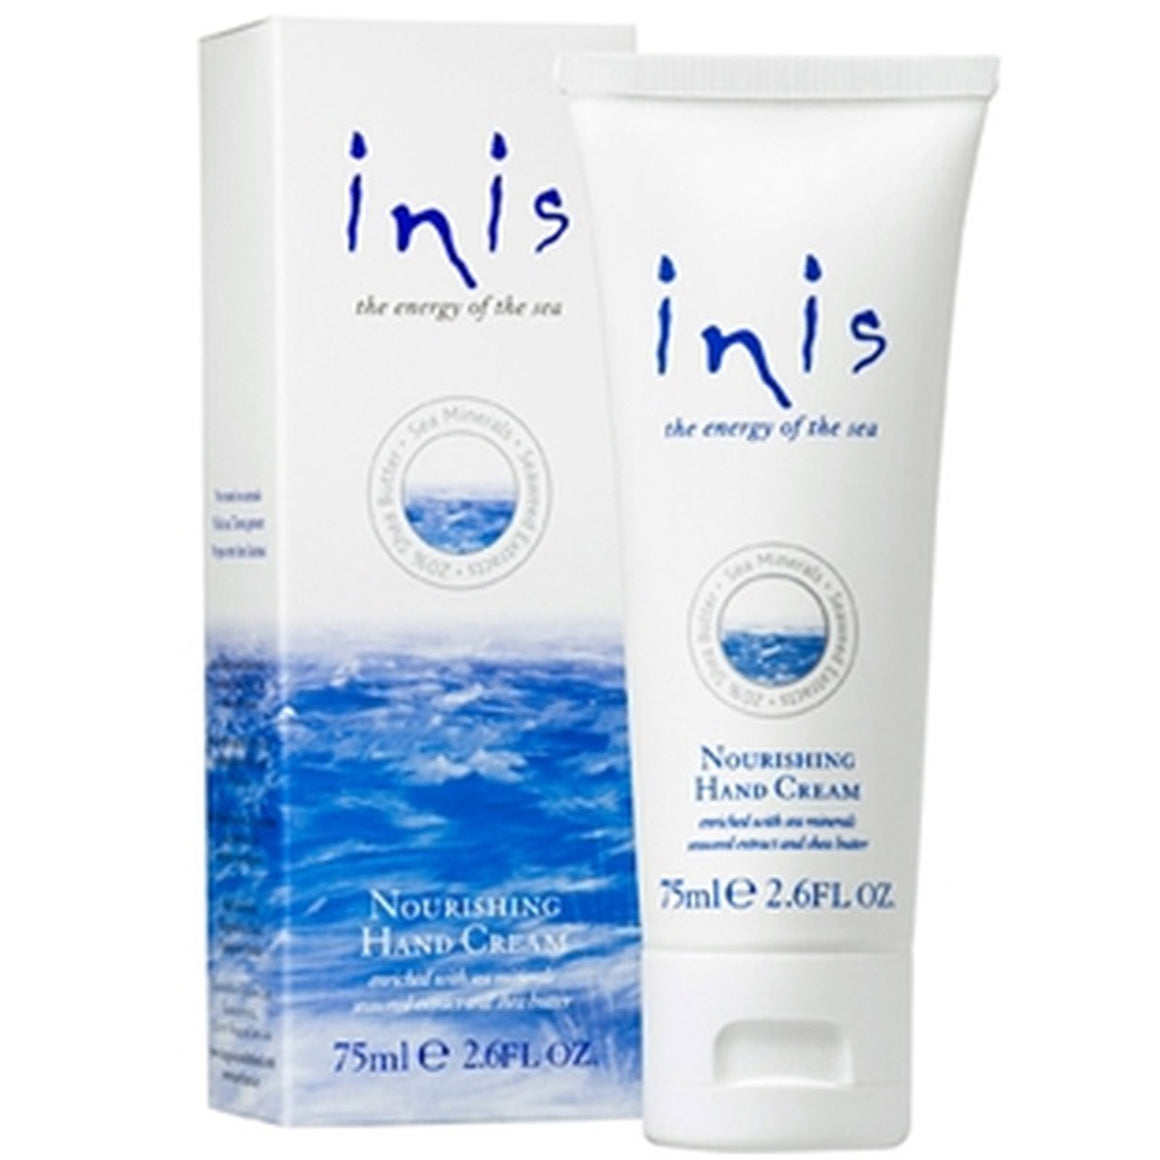 Inis Nourishing Hand Cream. 75ml